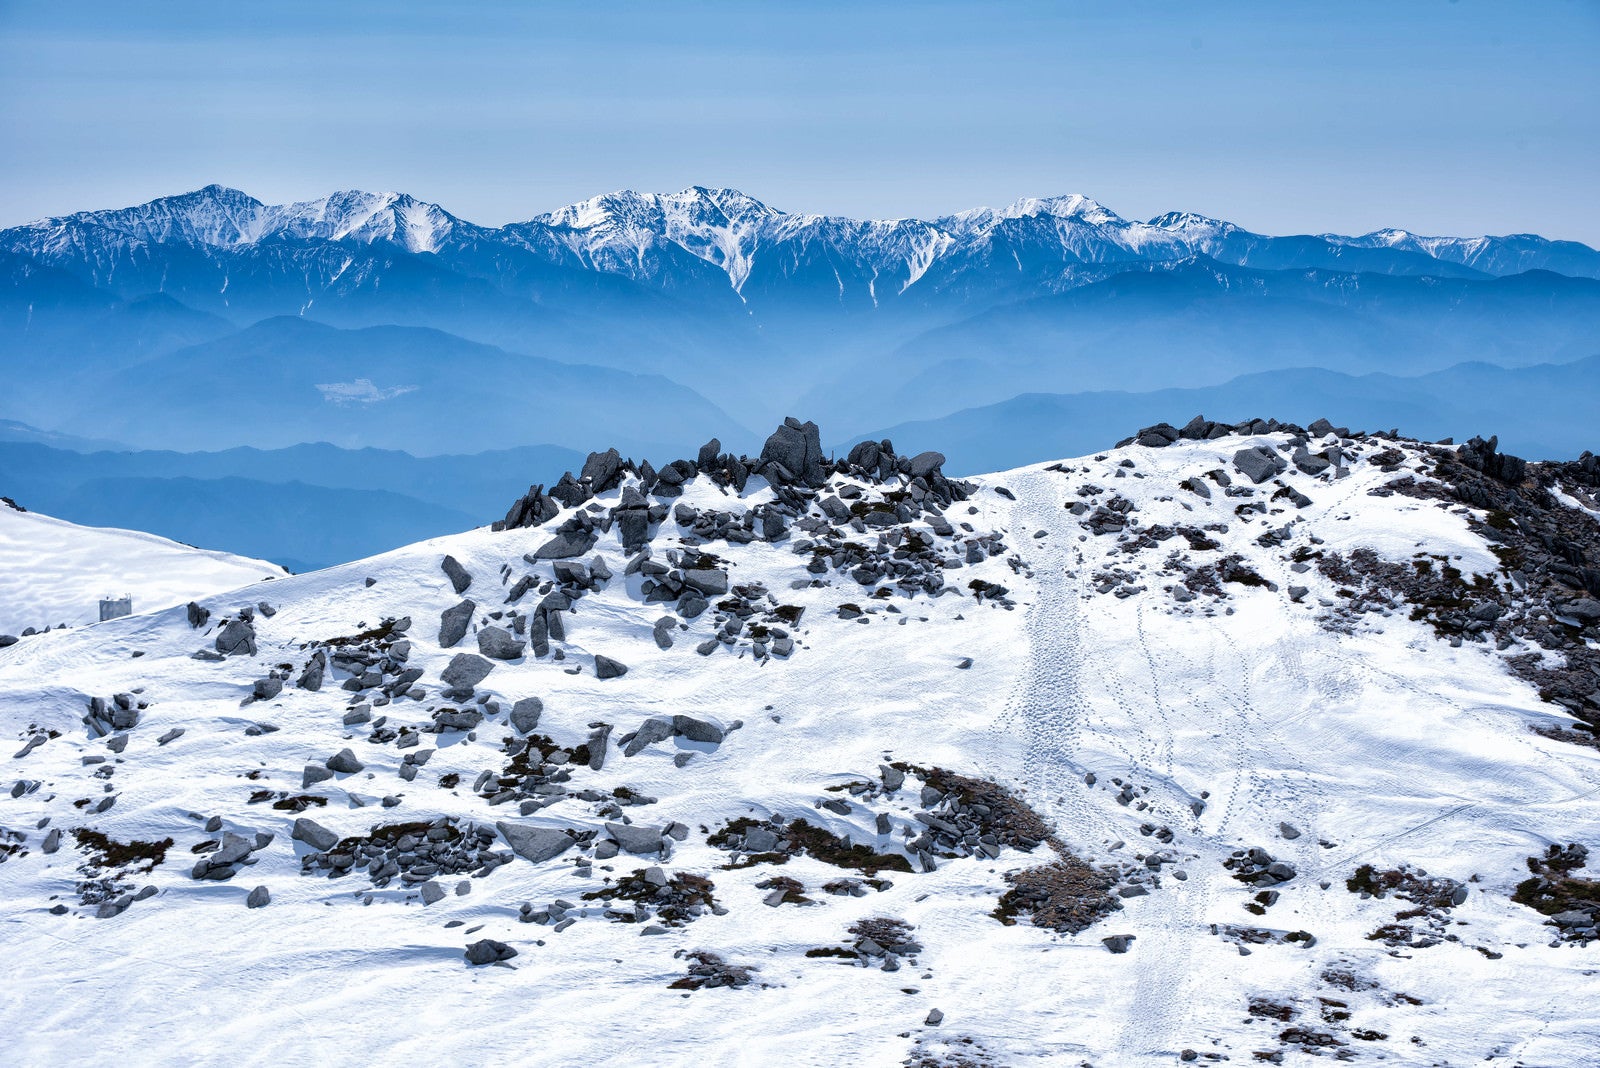 「雪残る中岳のガレ場と南アルプス」の写真